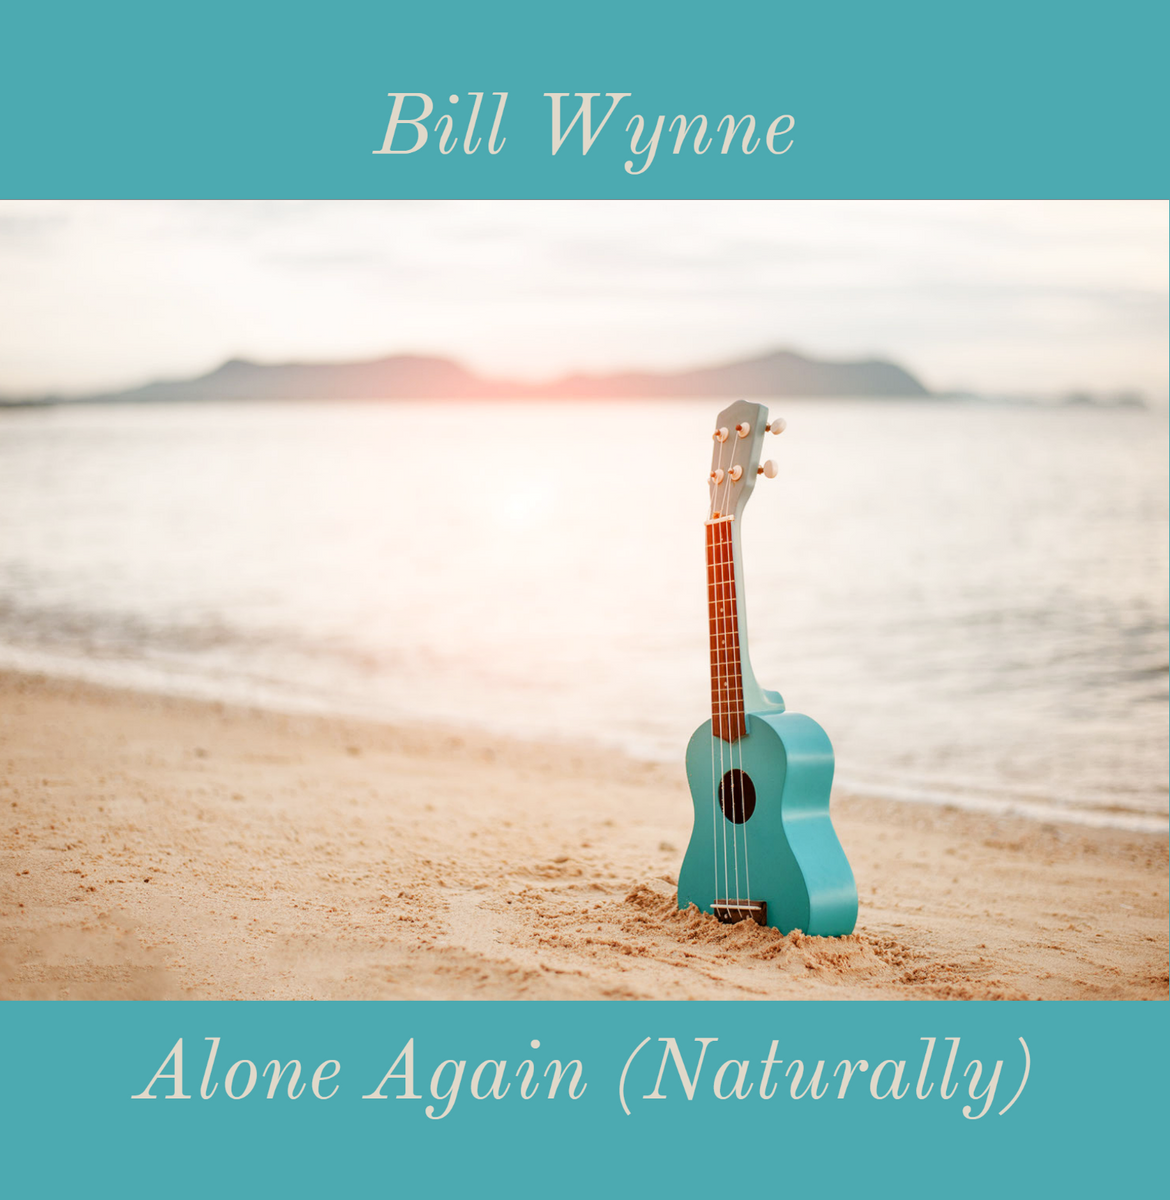 Alone Again (Naturally) (album) - Wikipedia